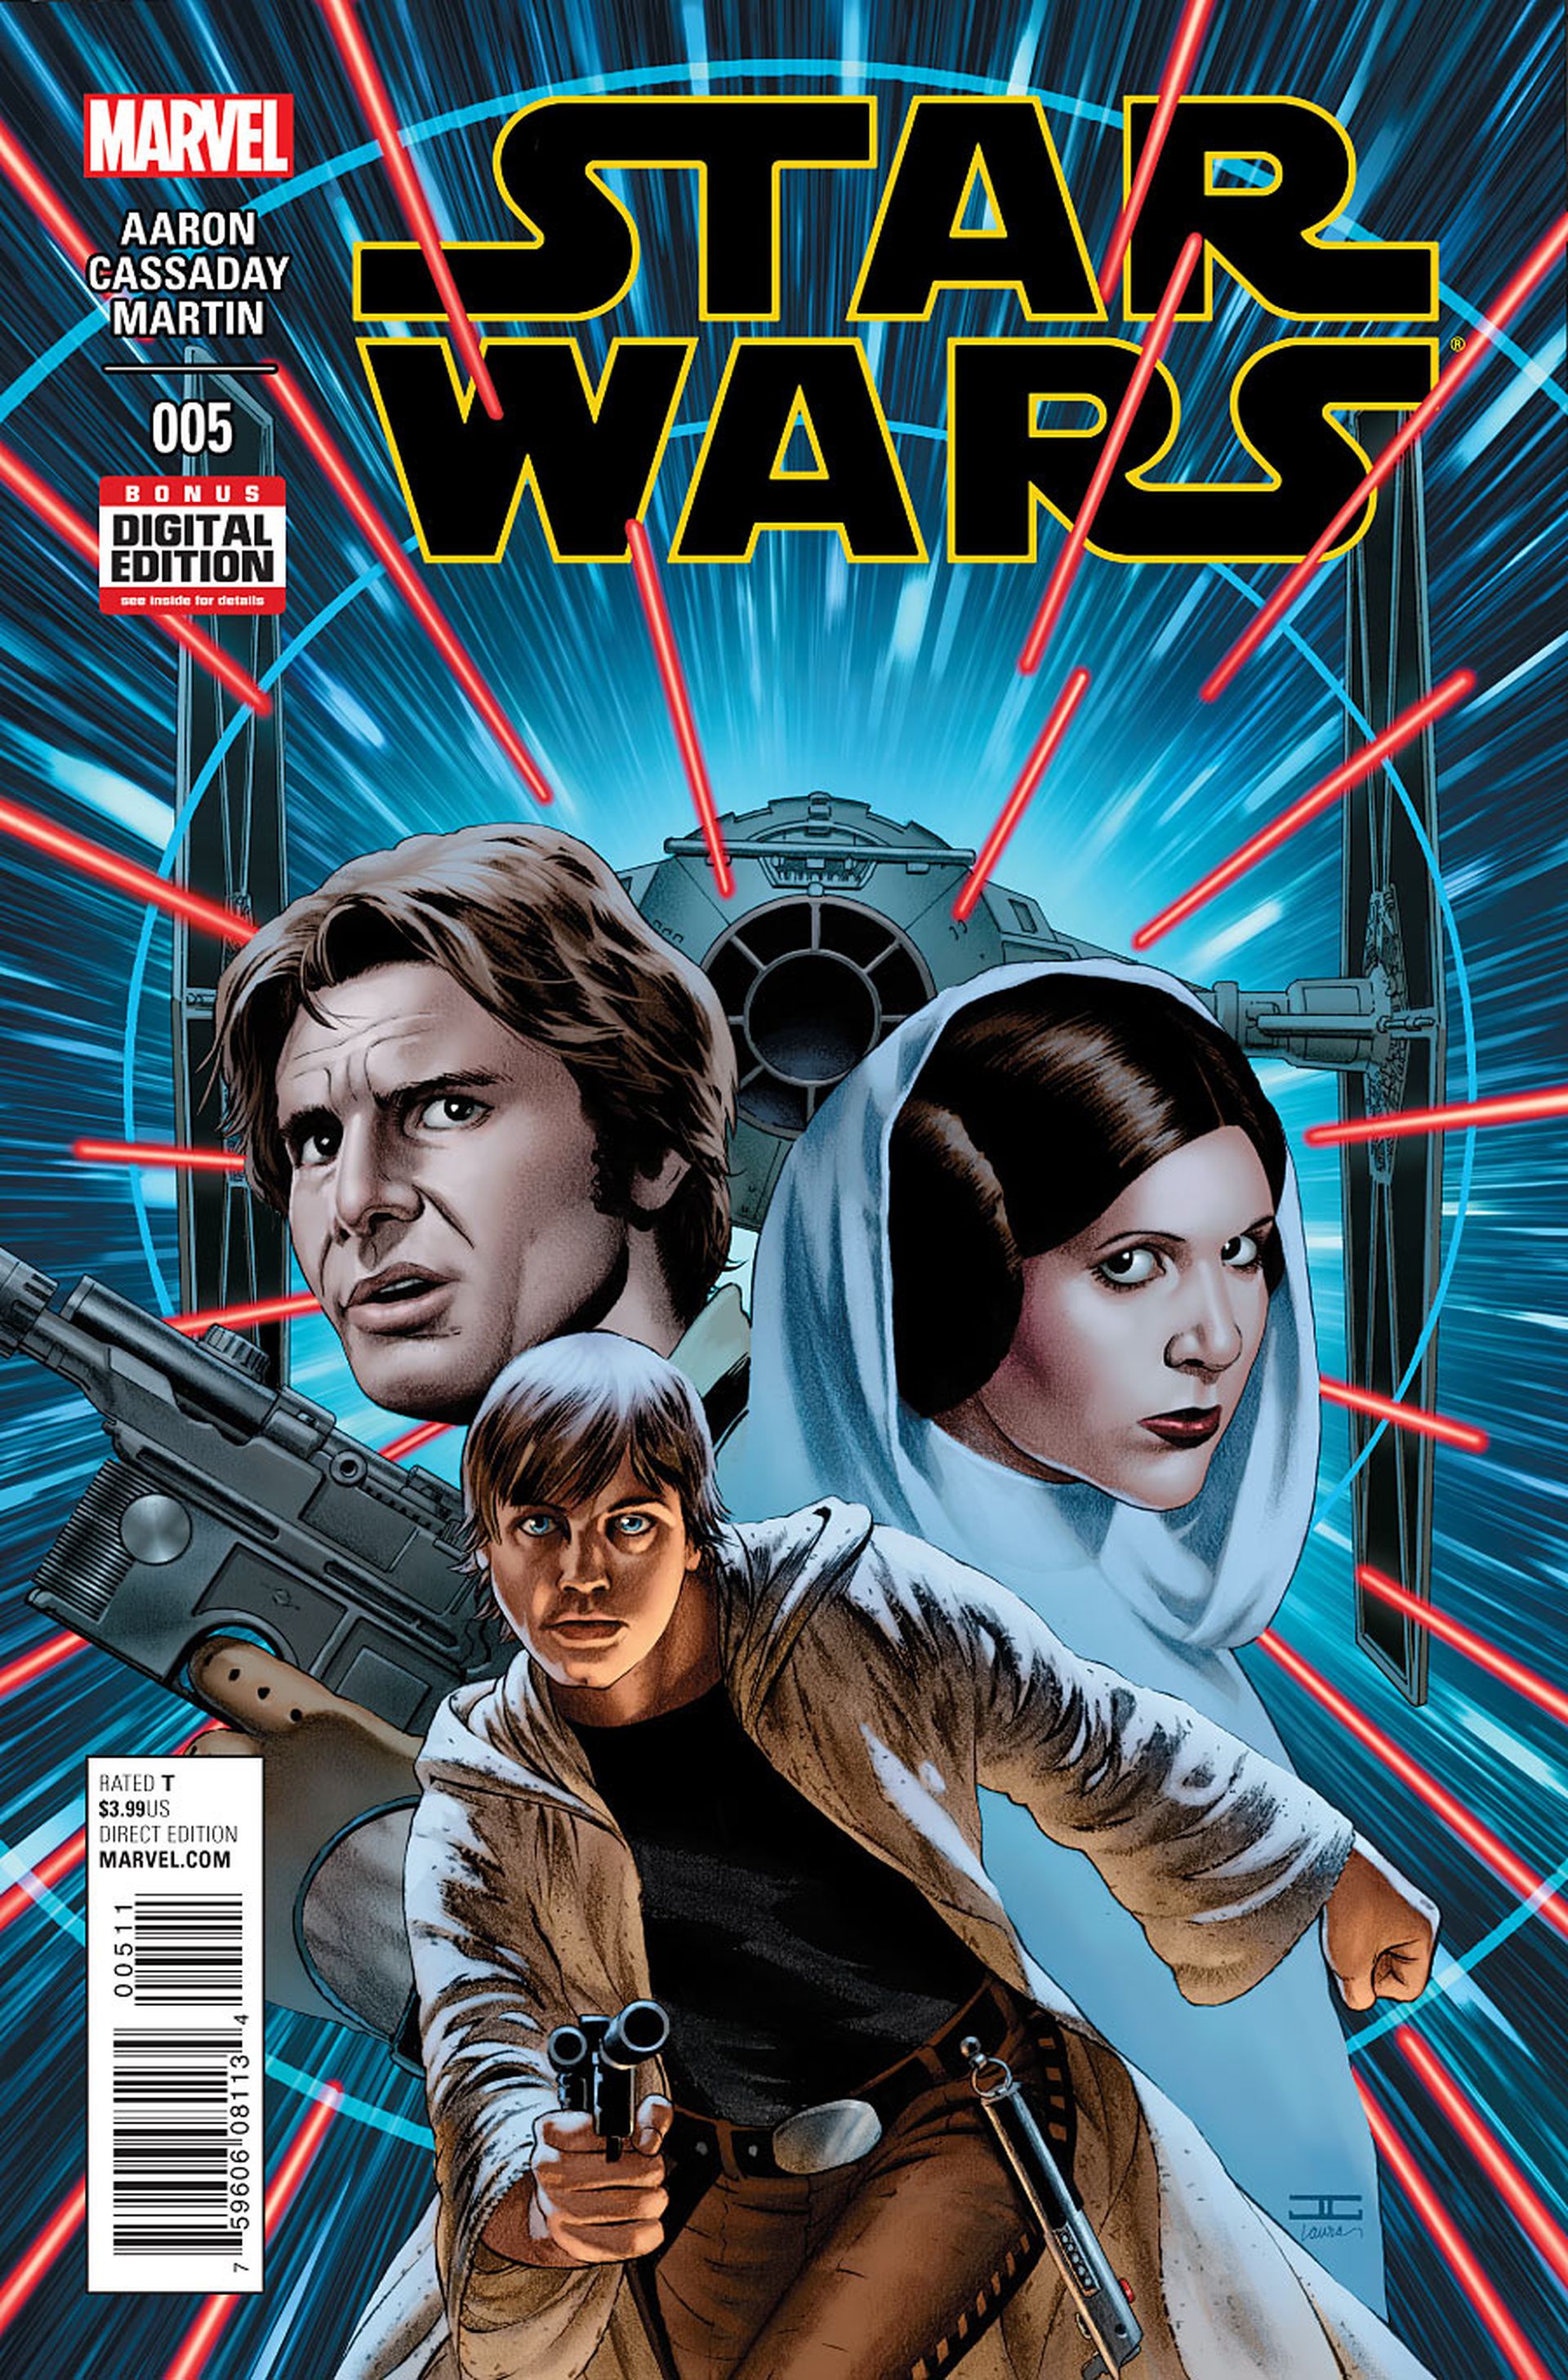 Star Wars: Boba Fett toma las riendas del cómic en esta preview